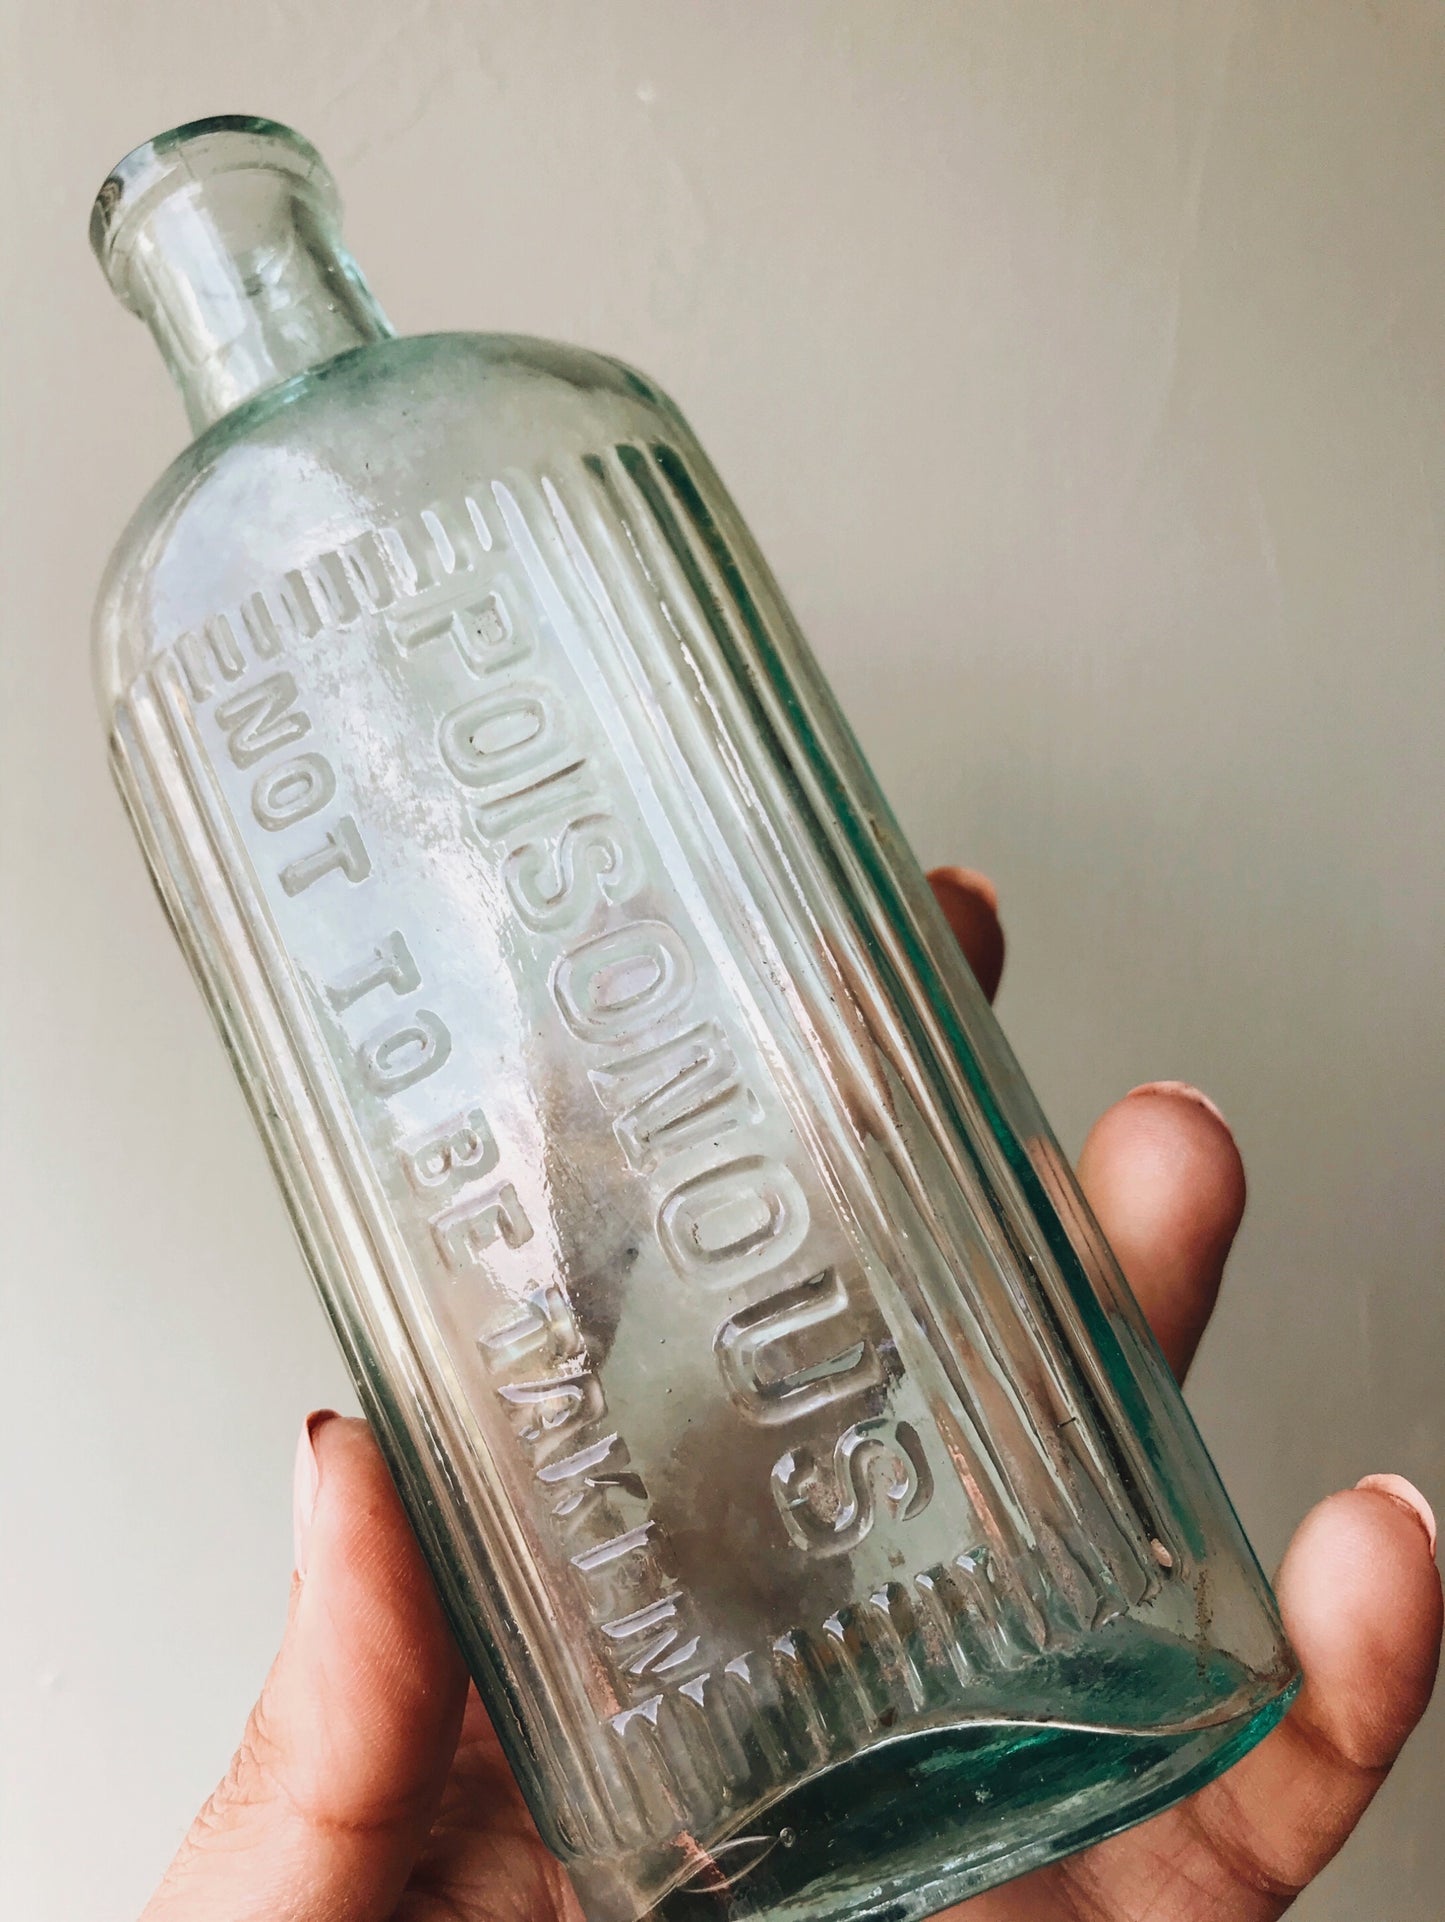 Large Antique Poisonous Apothecary Bottle